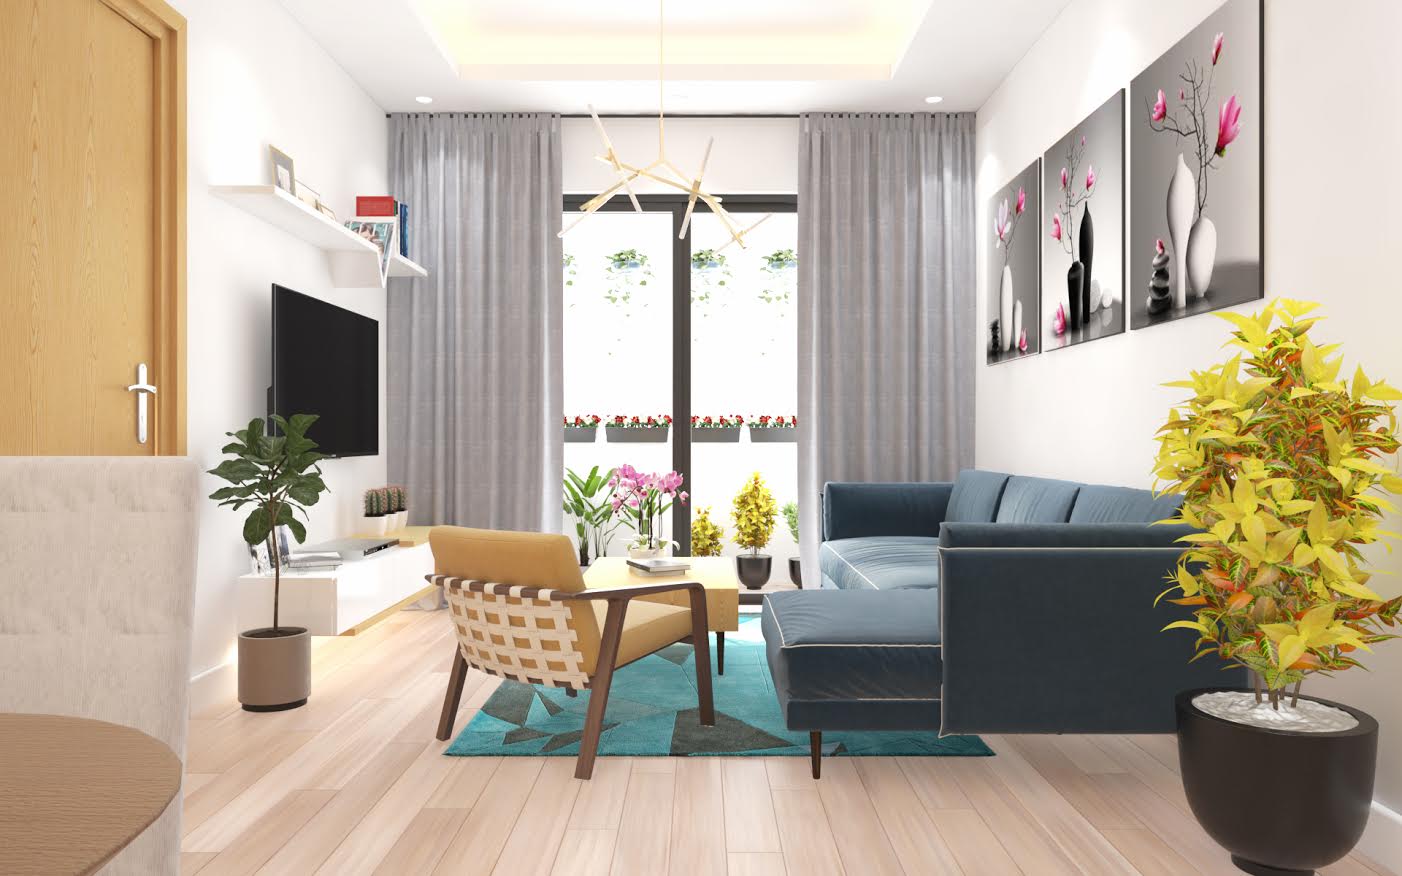 Tham khảo 3 mẫu thiết kế nội thất chung cư giá rẻ đẹp miễn chê